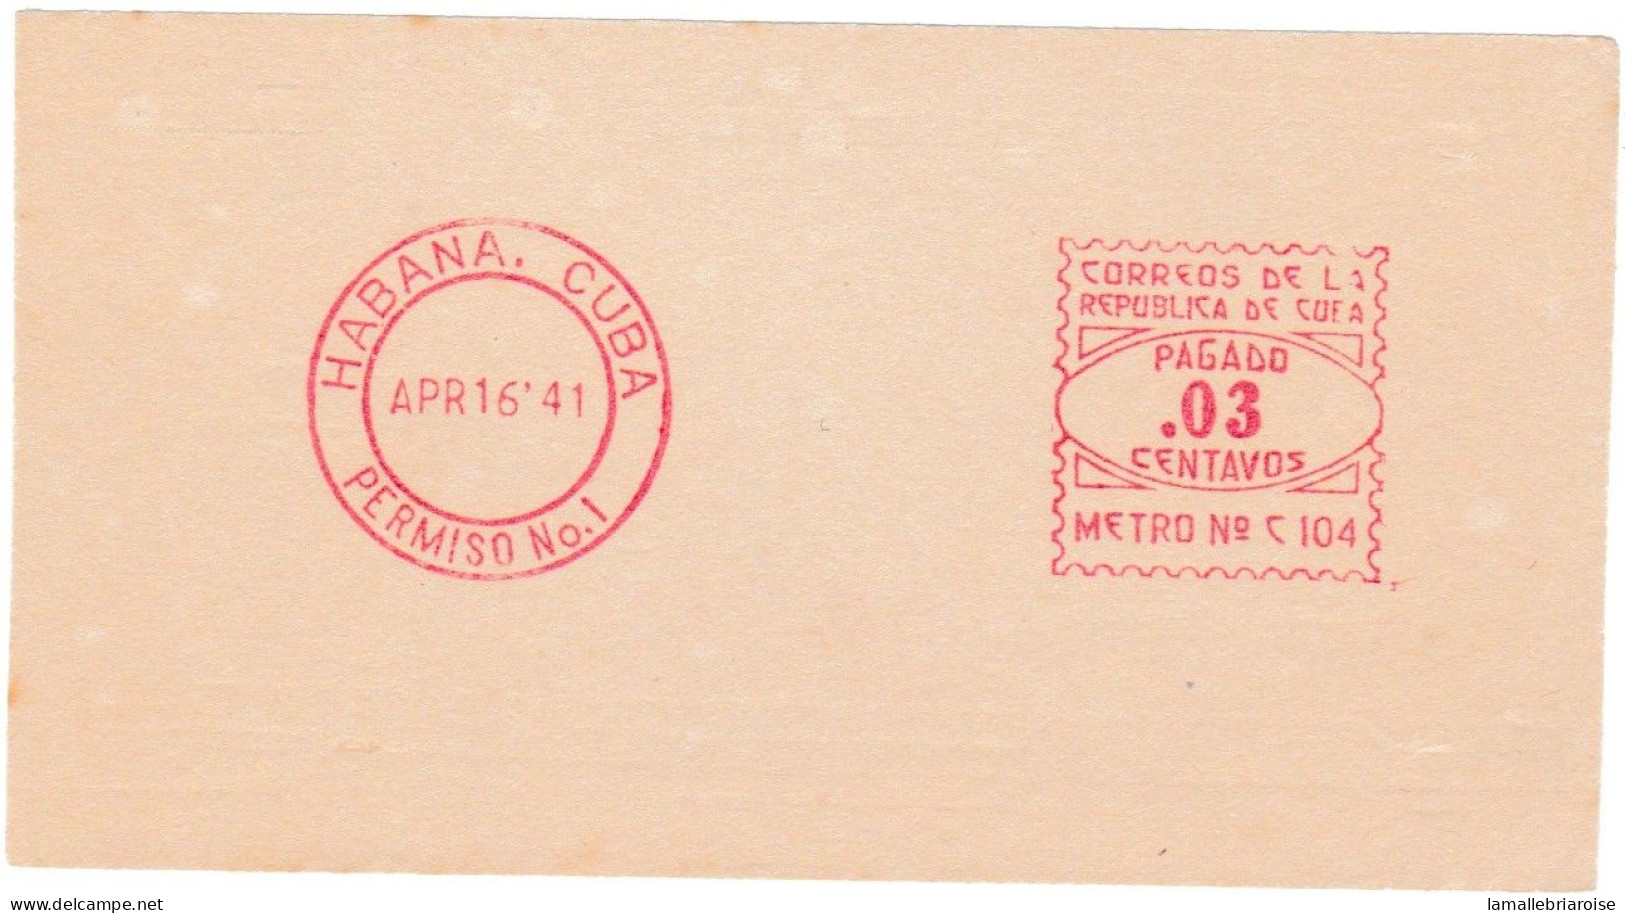 Cuba, Habana, Essai De Machine à Affranchir, 16 Avril 1941 - Sin Dentar, Pruebas De Impresión Y Variedades